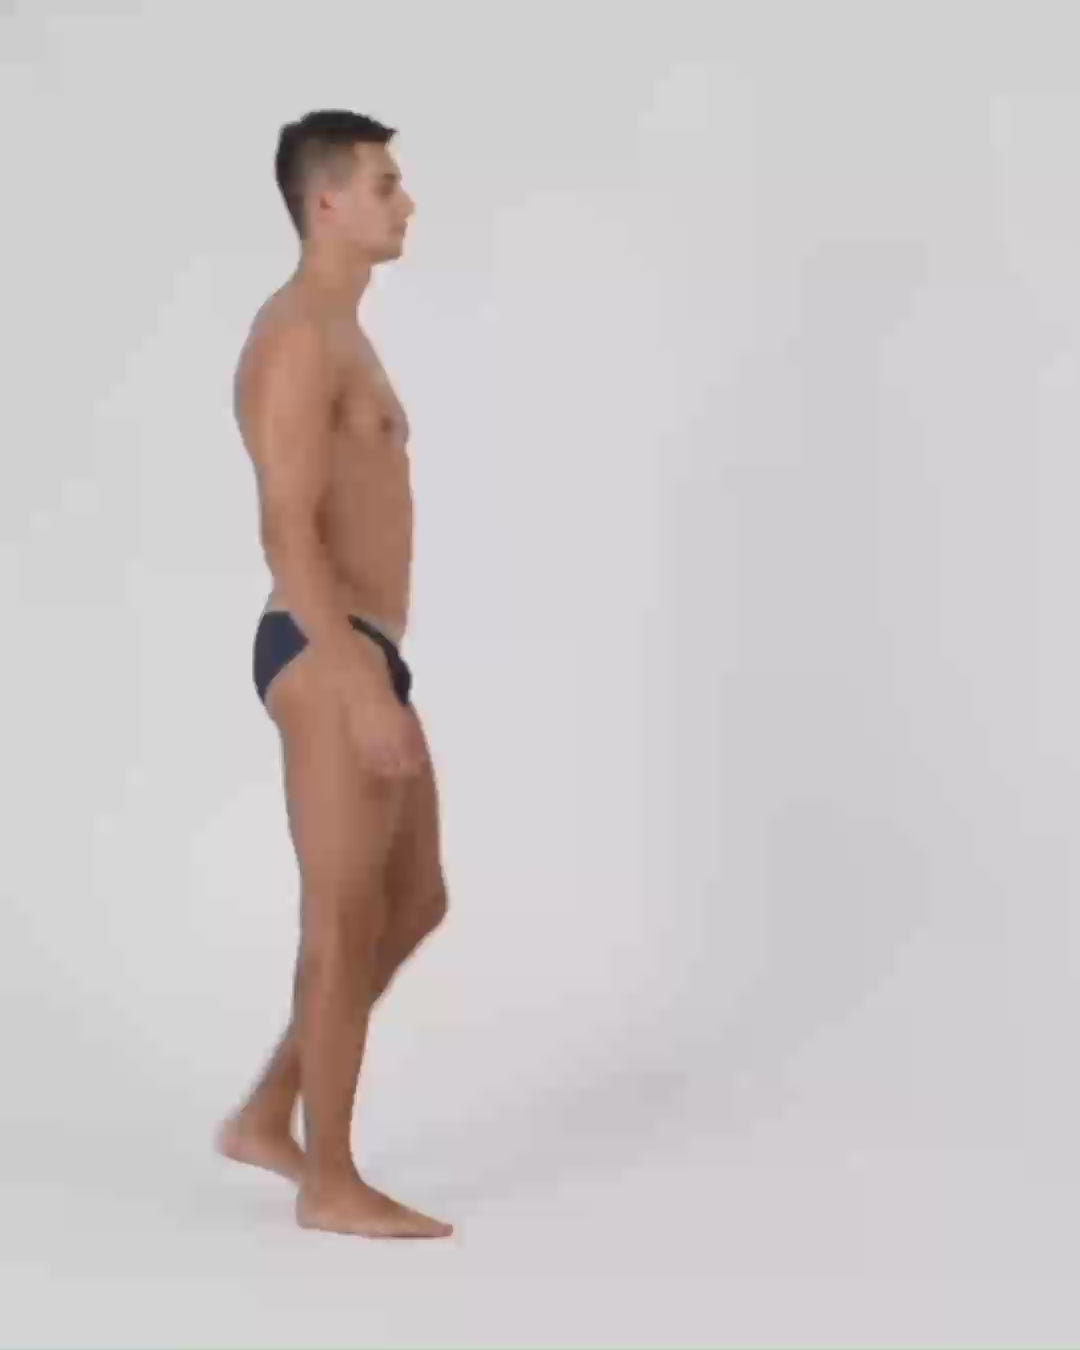 SEOBEAN Mens Sexy Super Low Rise Bikini Briefs Underwear #Top 10104 –  SEOBEAN®